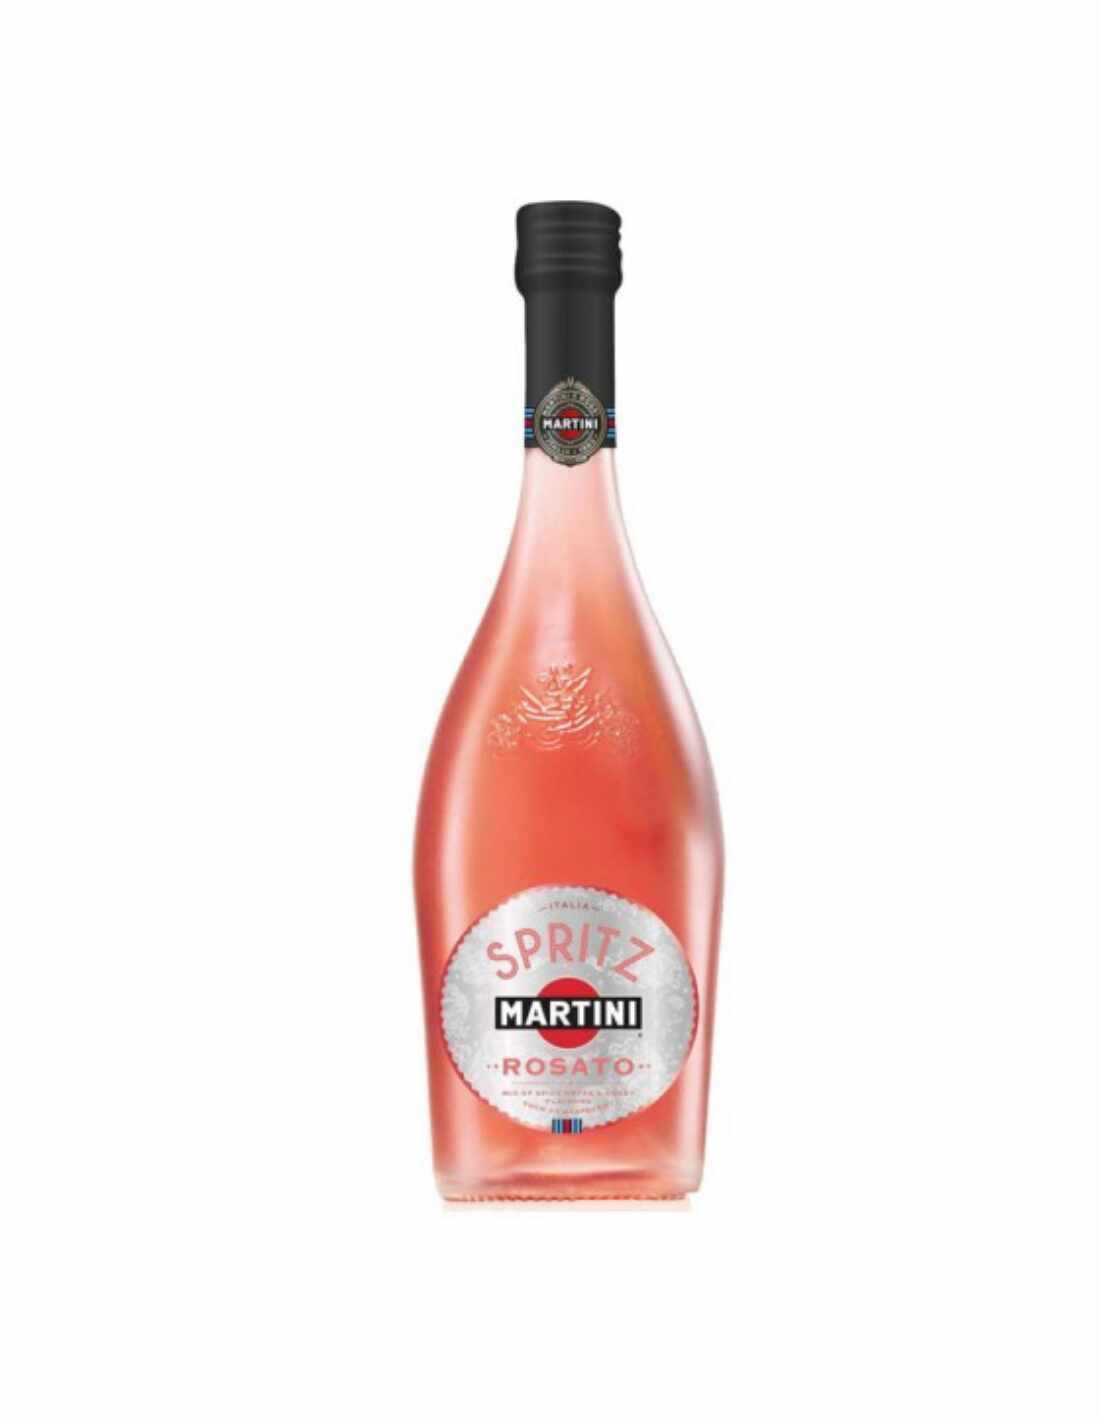 Aperitiv Martini Spritz Rosato, 8% alc., 0.75L, Italia